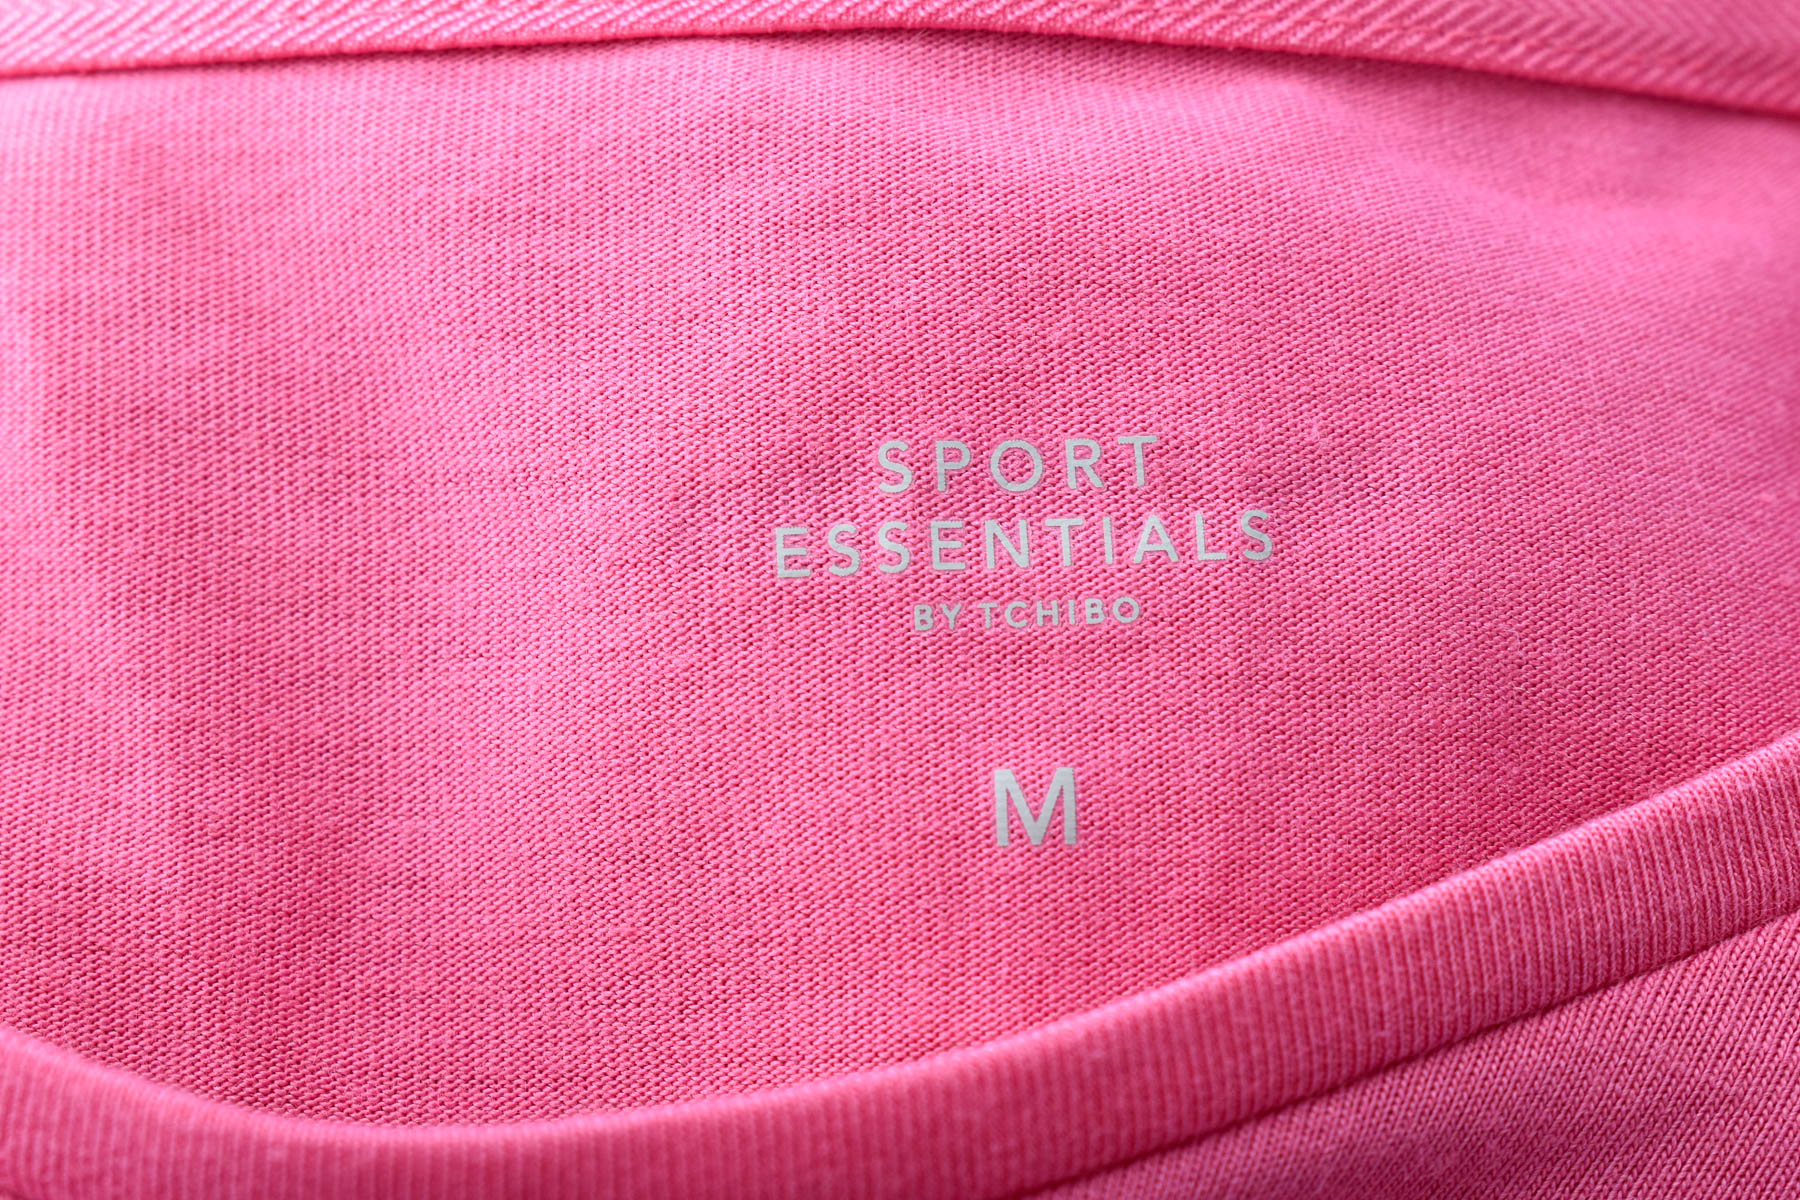 Дамска тениска - Sport Essentials by Tchibo - 2